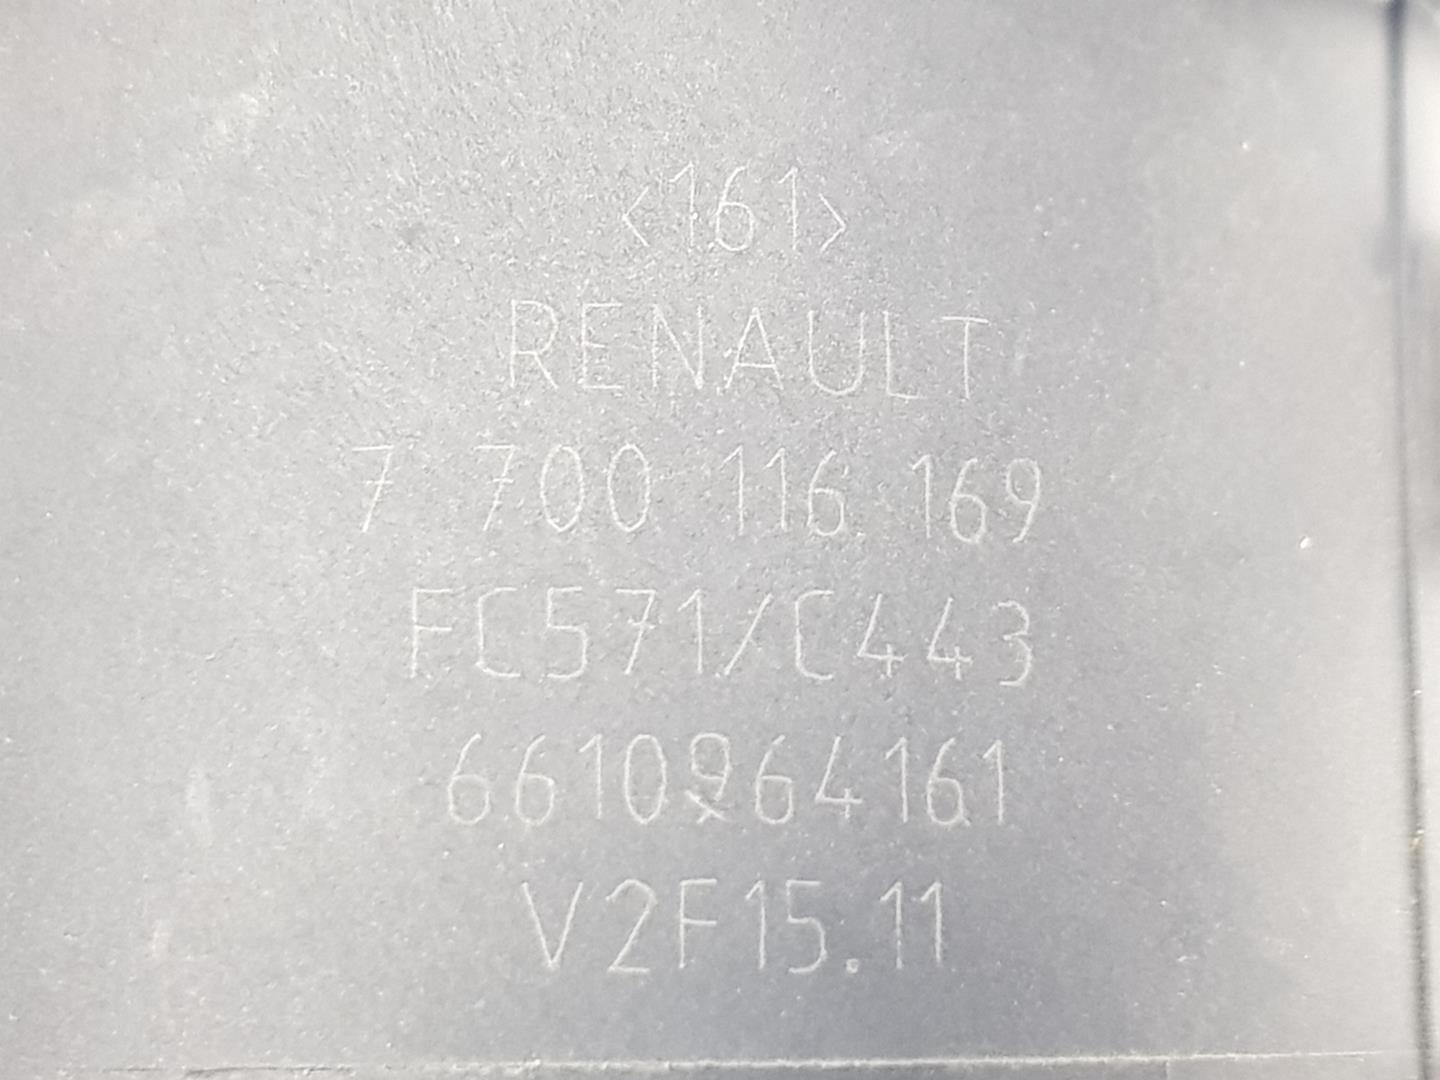 RENAULT Kangoo 1 generation (1998-2009) Egyéb motortéralkatrészek 7700116169, 6610964161 19808600